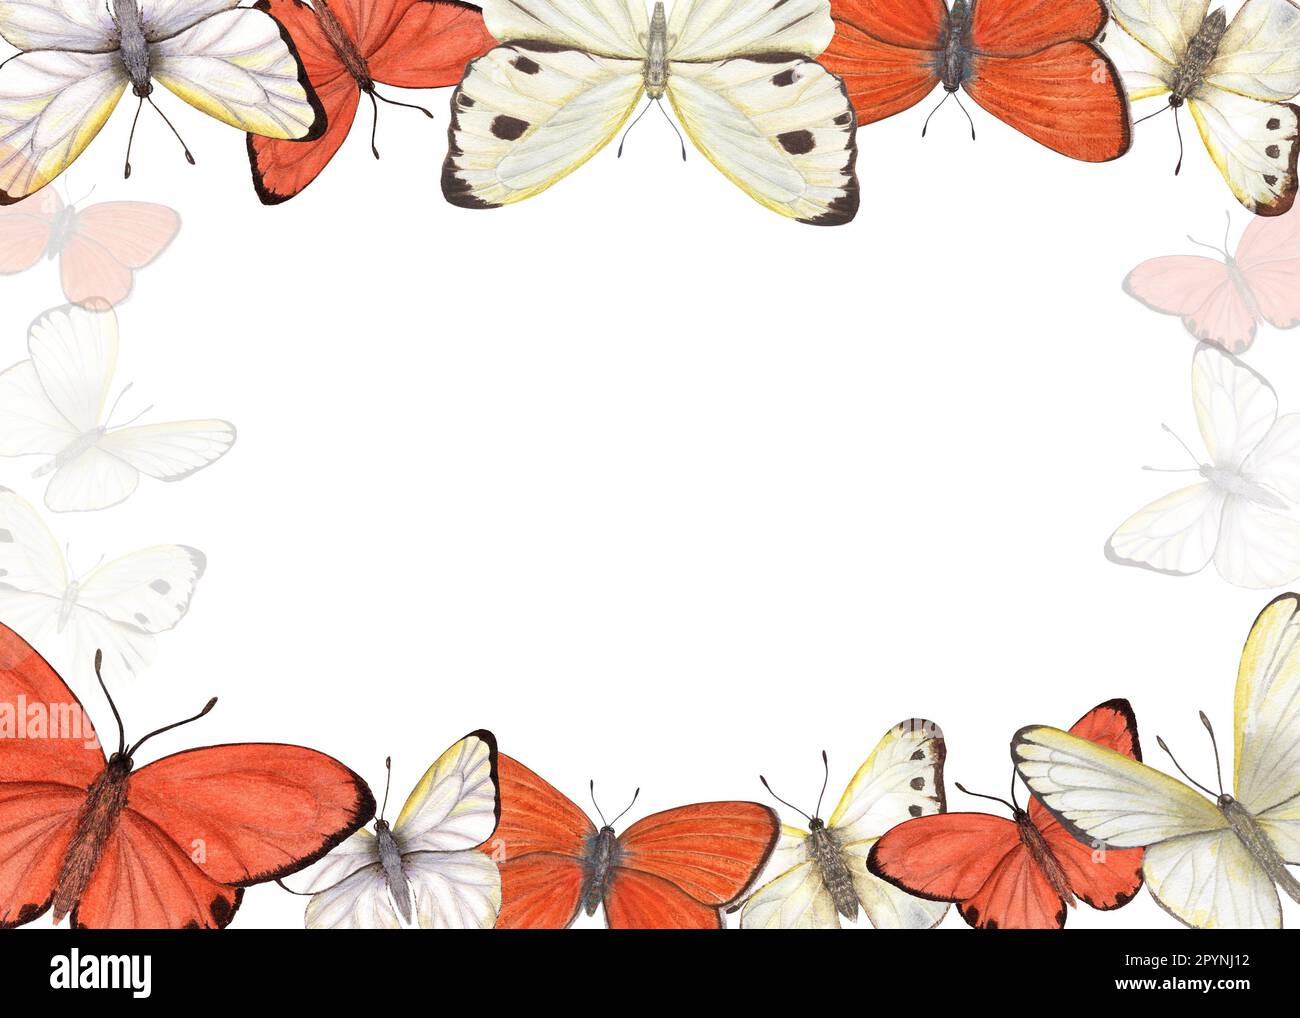 Horizontaler Rahmen mit isolierten Schmetterlingen auf weißem Hintergrund. Aquarelle Illustration für Postkartendesign, Einladungsvorlage, Valentinskarte Stockfoto